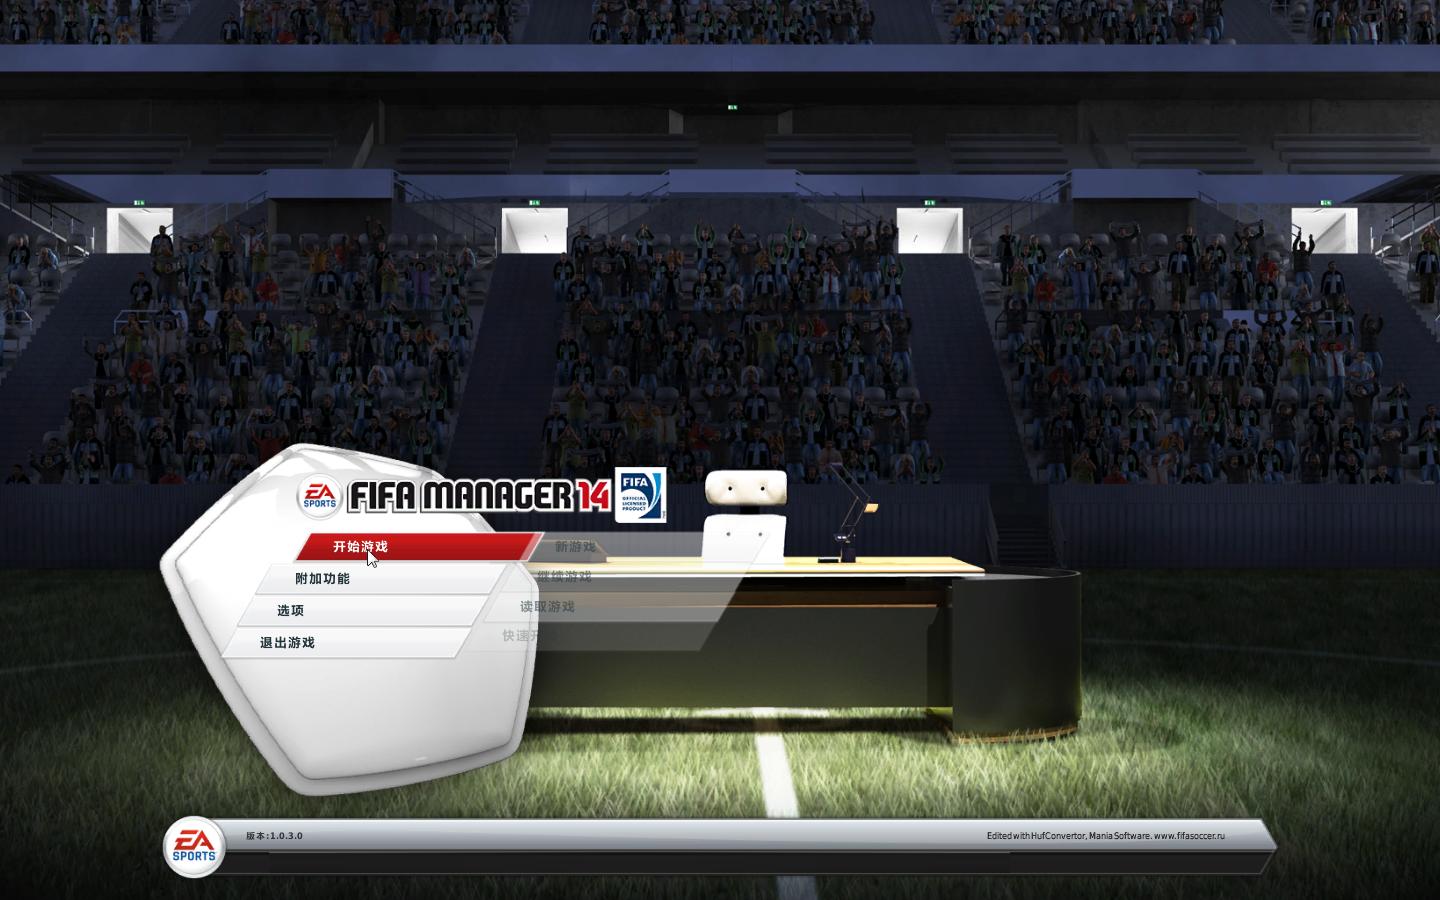 FIFA14FIFA Manager 14ĺV1.0